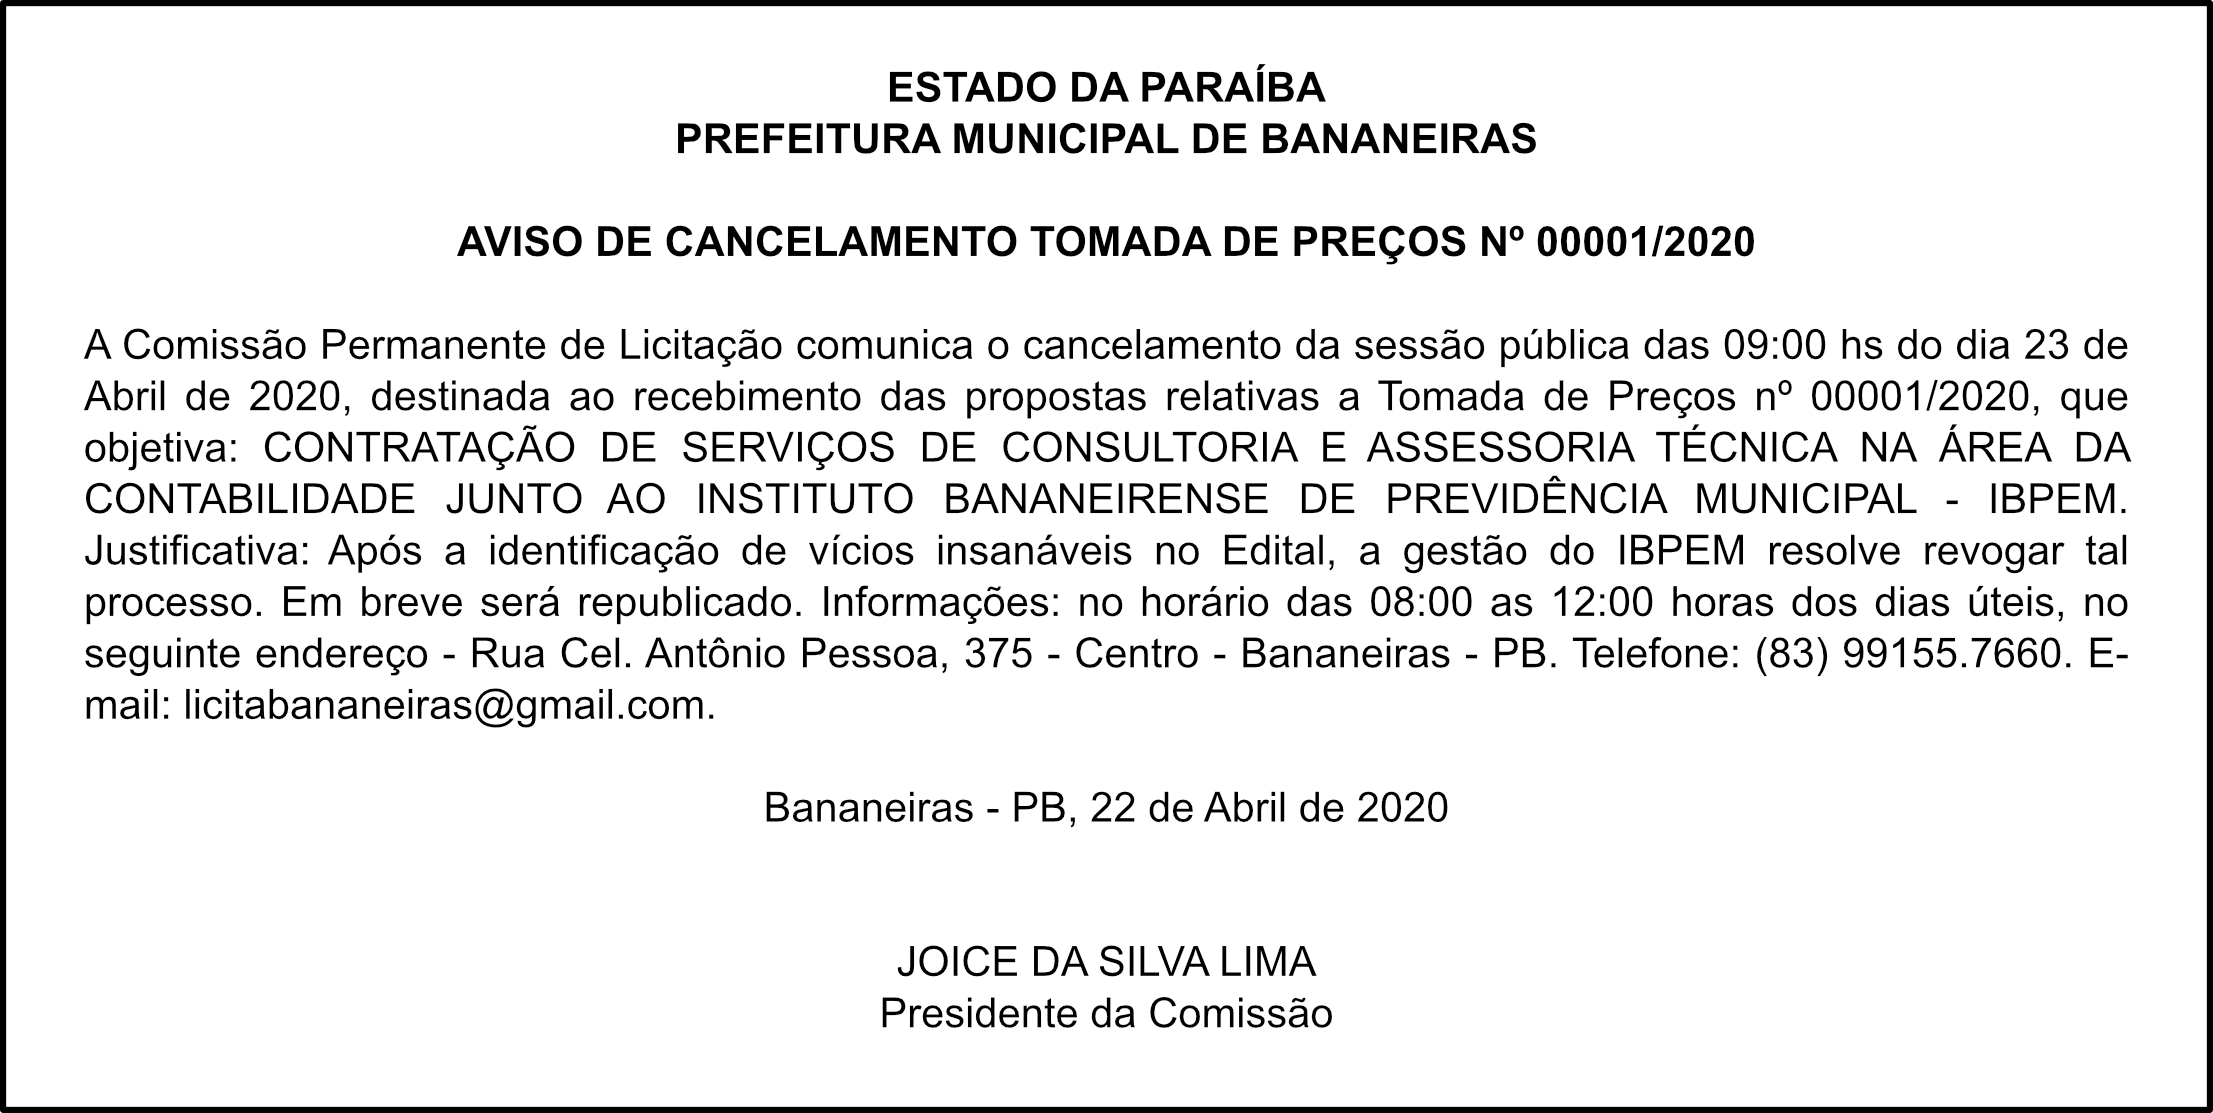 PREFEITURA MUNICIPAL DE BANANEIRAS – AVISO DE CANCELAMENTO – TOMADA DE PREÇOS 0001/2020